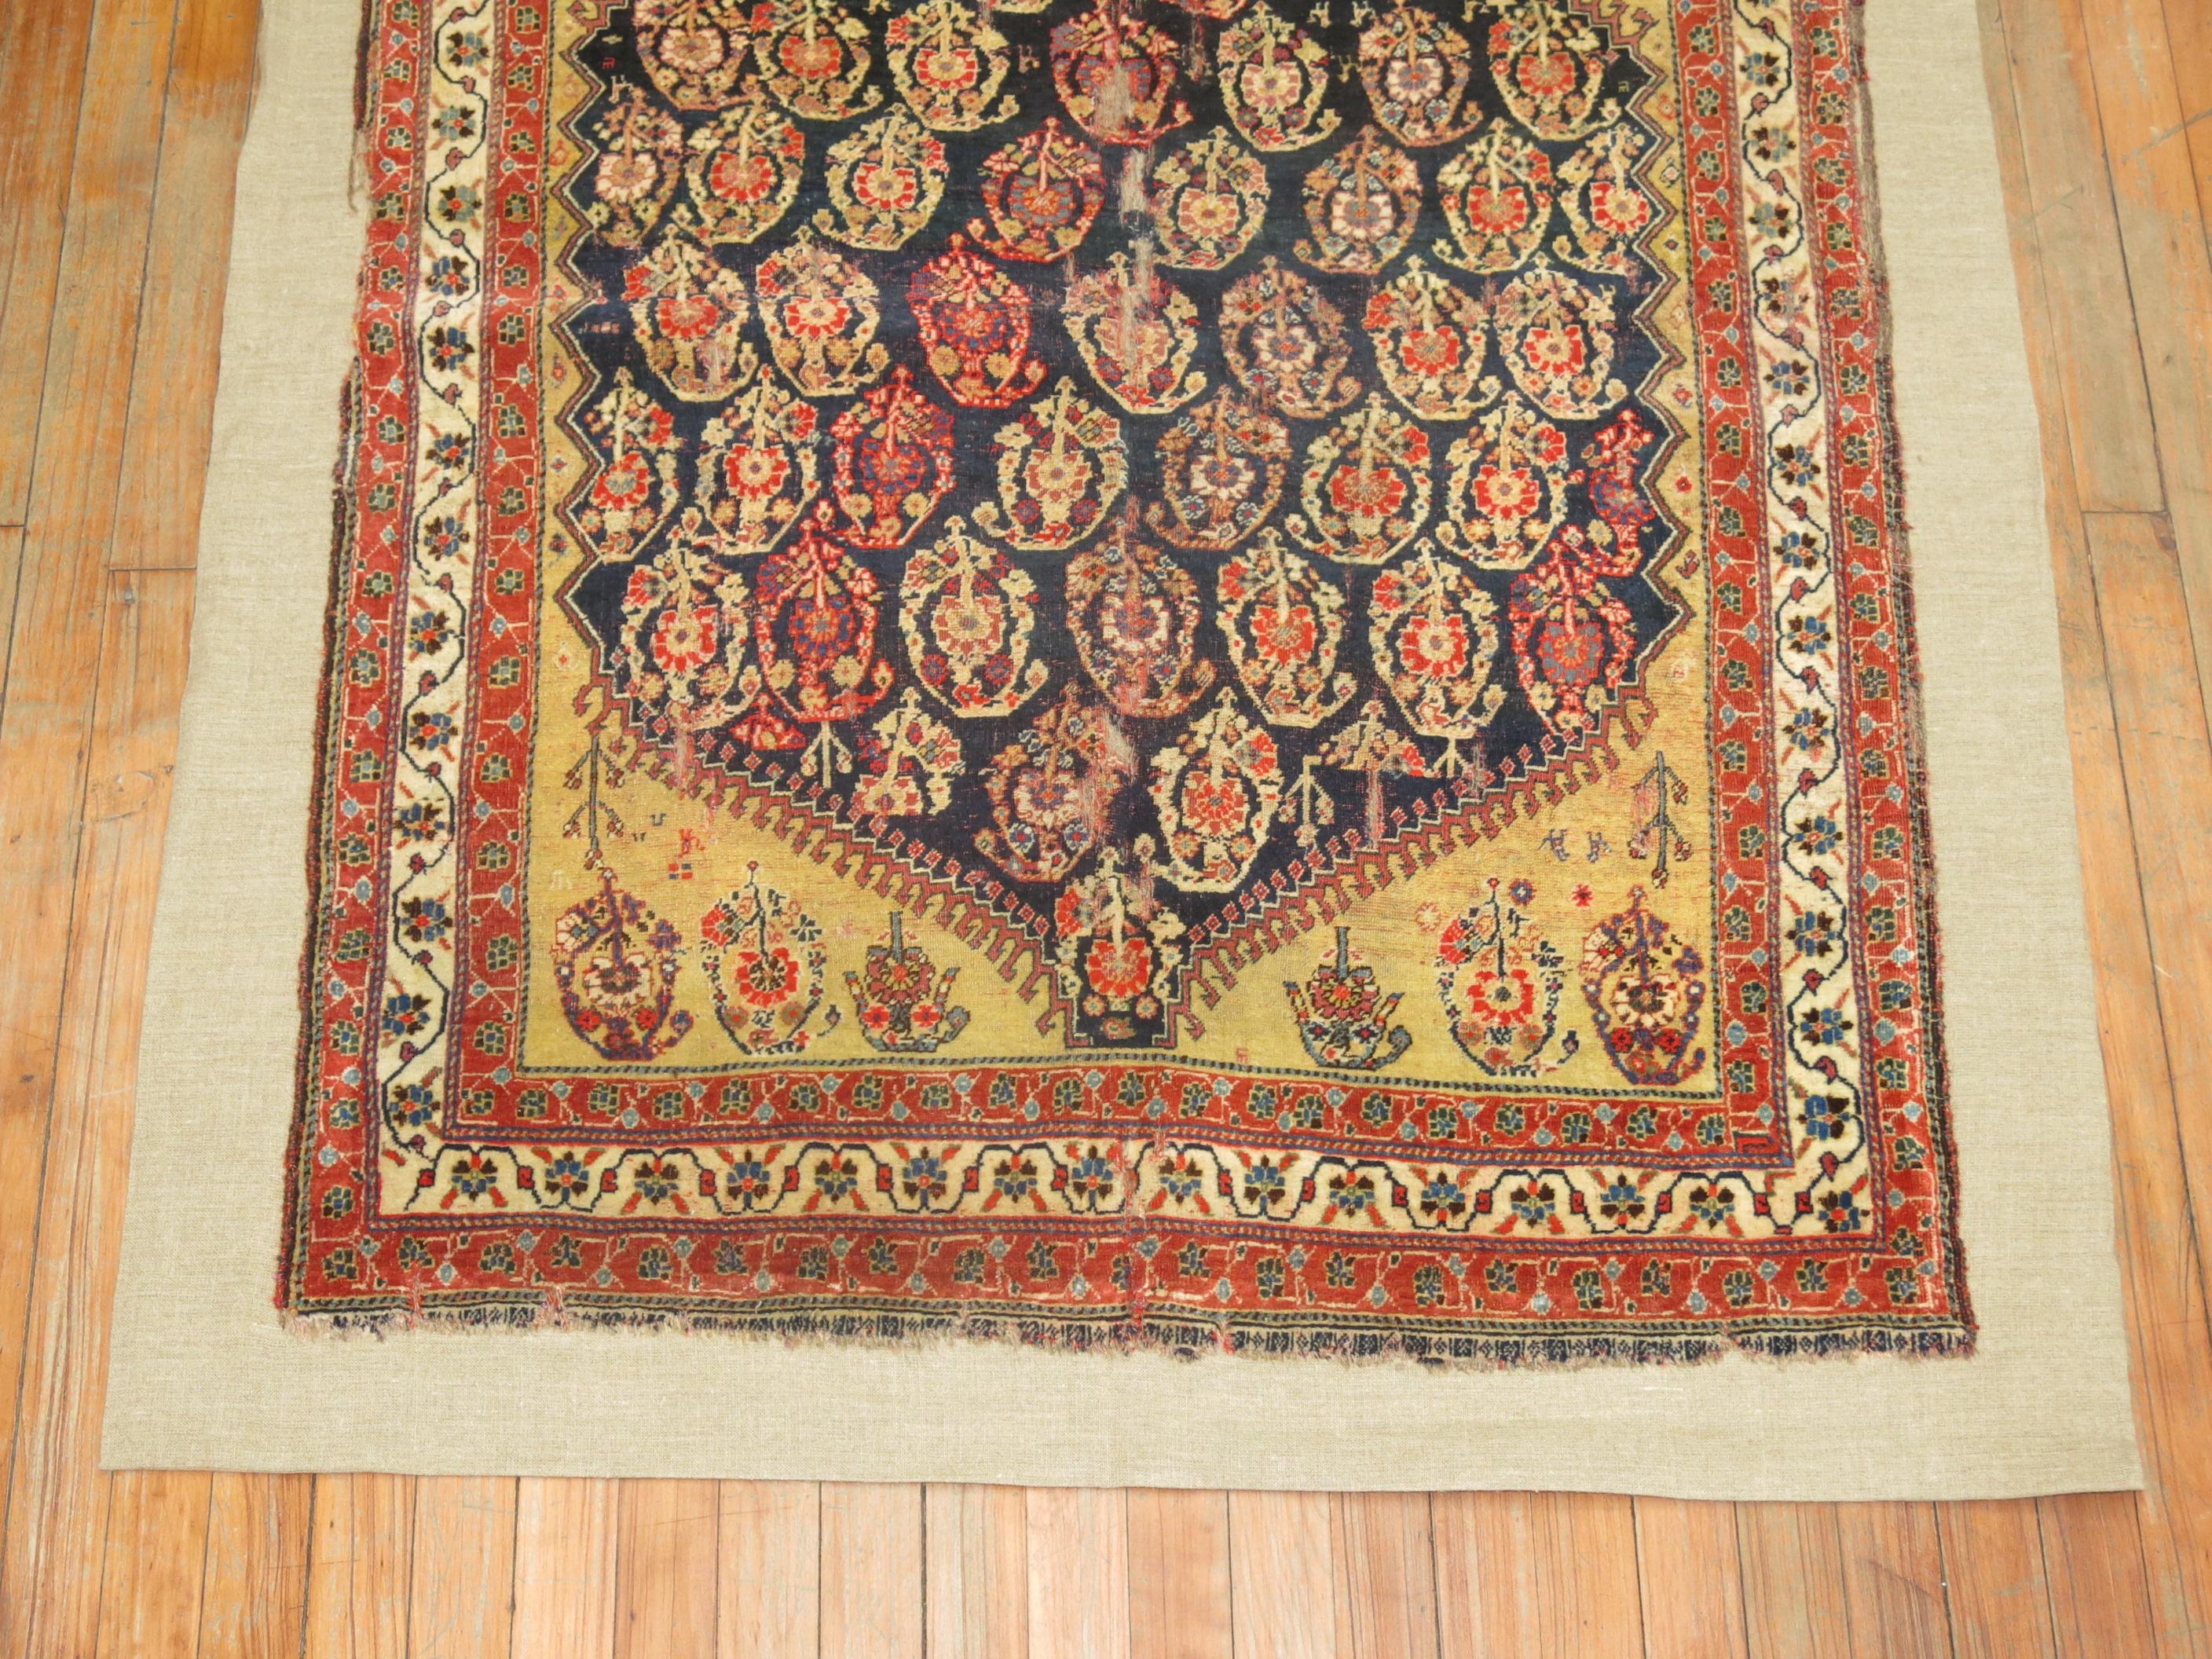 Un tapis tribal persan Qashqai du début du 19e siècle cousu sur une toile comme du lin. Cet article peut être utilisé comme pièce murale ou comme revêtement de sol. Il est possible de marcher dessus si on le souhaite.

3'6'' x 5'8''